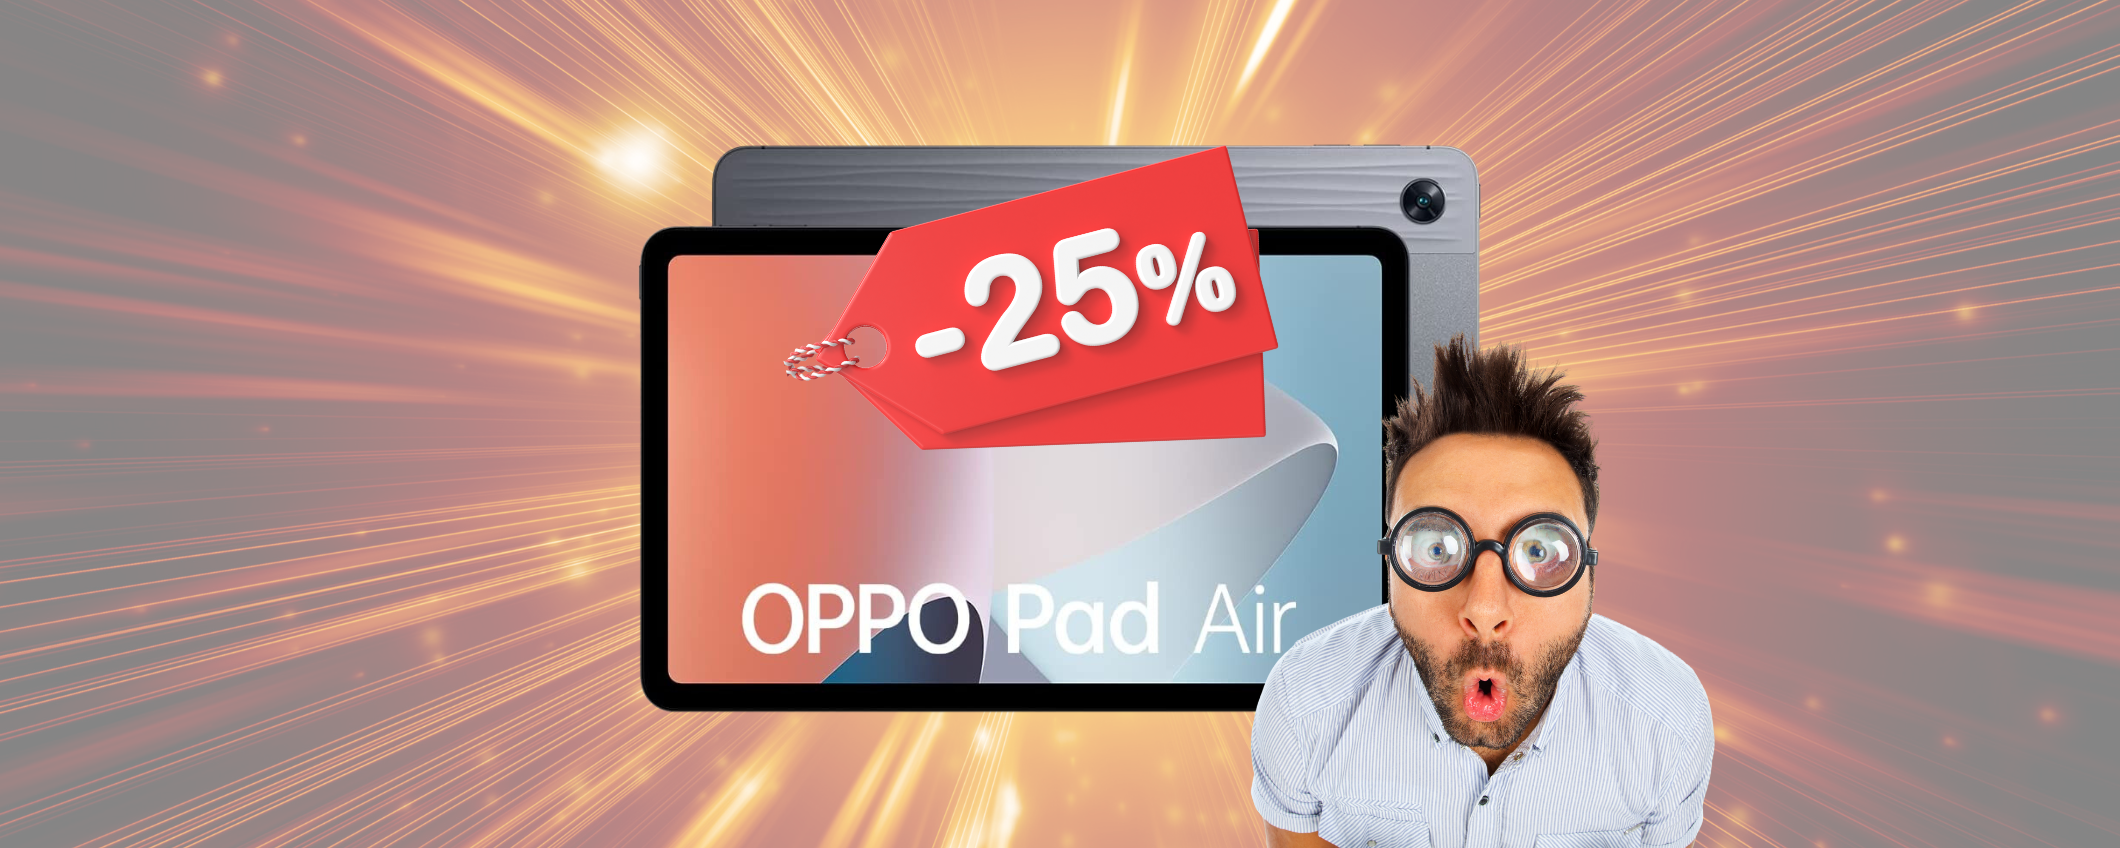 Tablet OPPO Pad Air: sconto INASPETTATO del 27% su Amazon